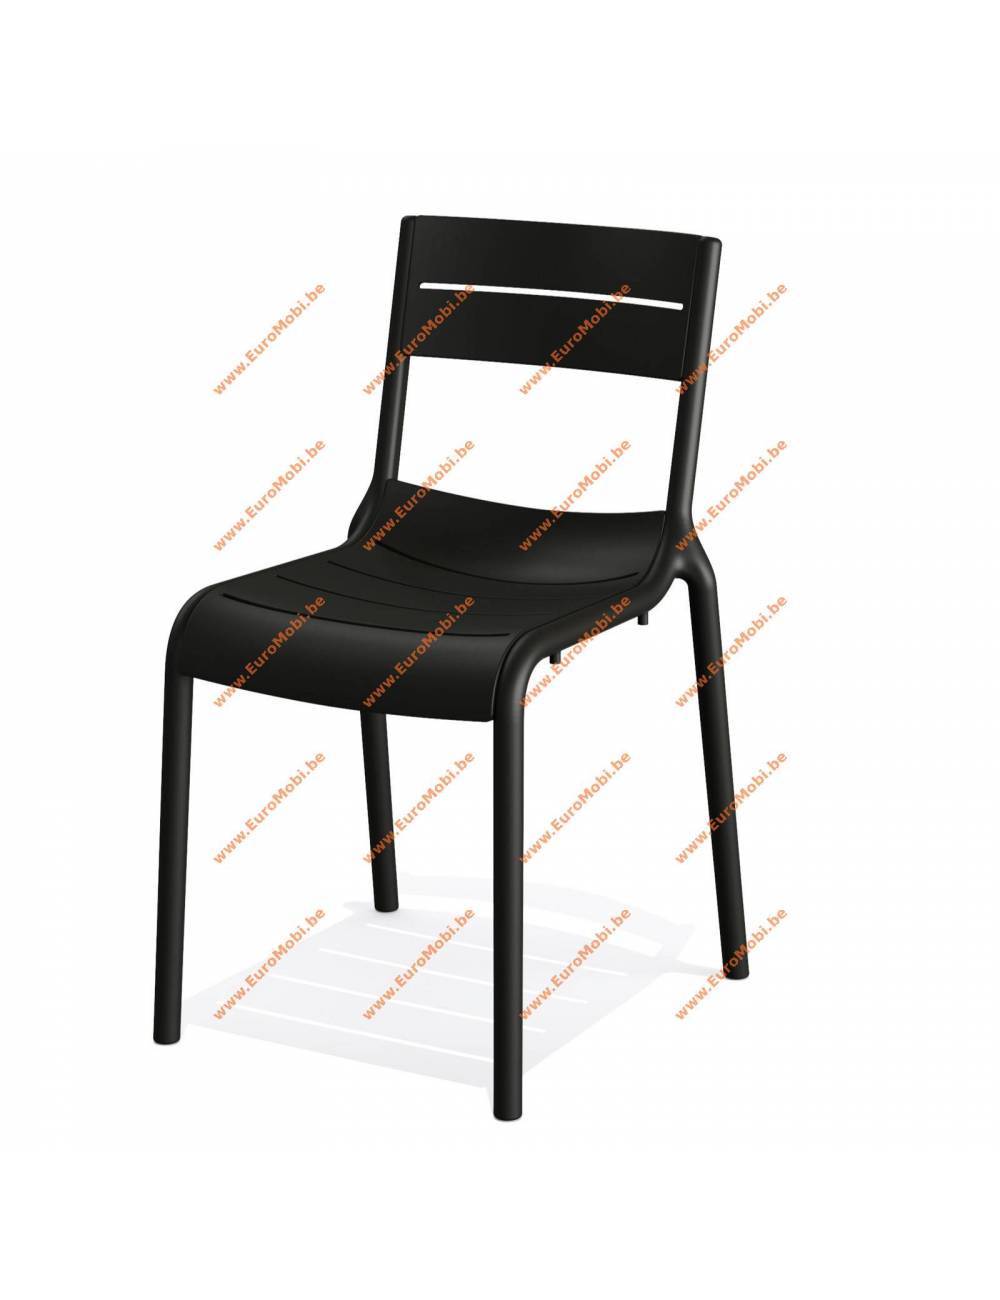 vente - chaise empilable - Calor - couleur Noir